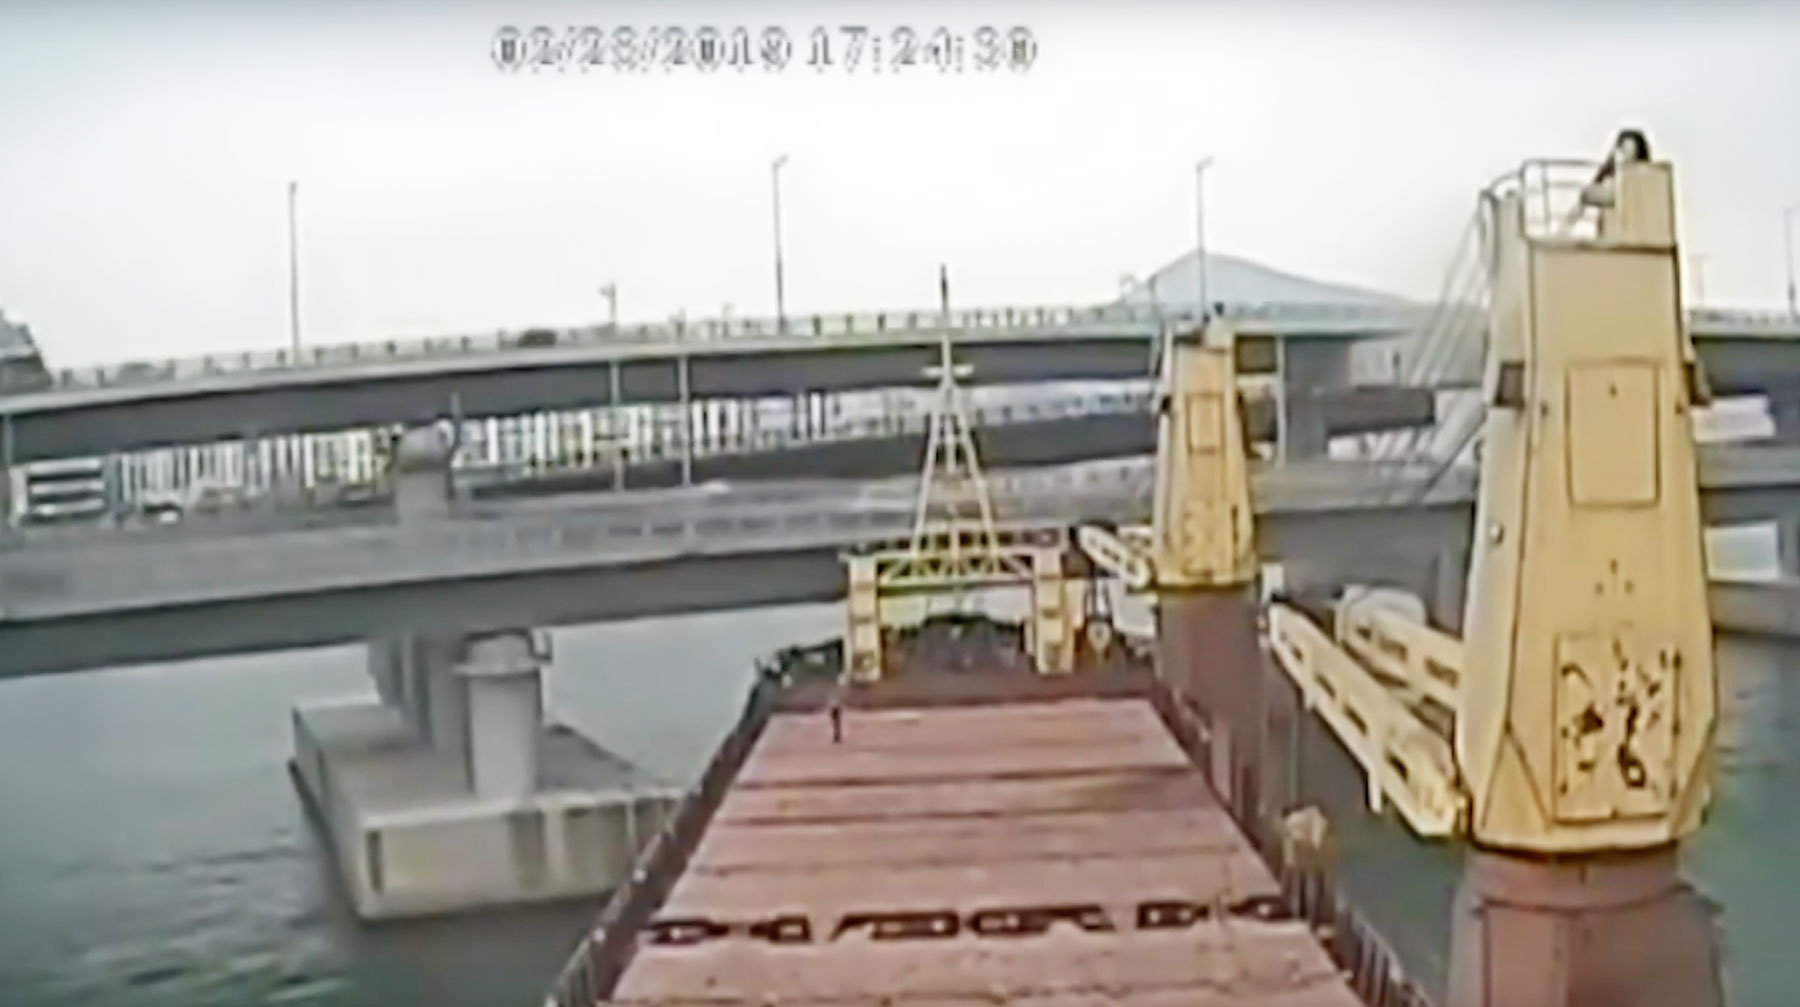 Сухогрузу Seagrand удалось избежать столкновения с яхтой, но позднее он врезался в мост undefined